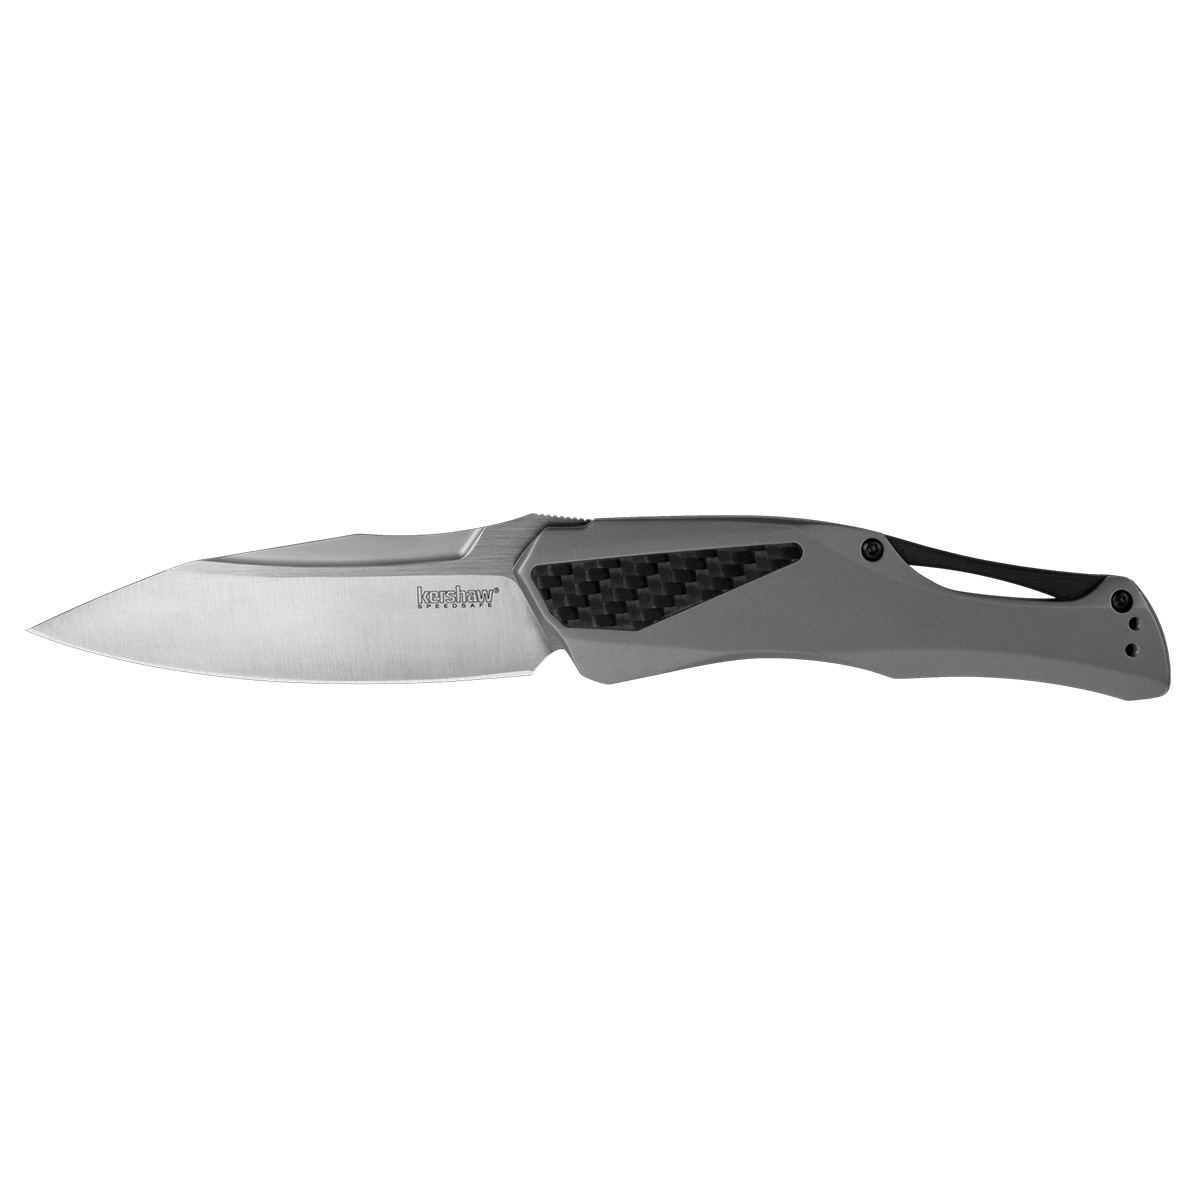 Полуавтоматический складной нож Kershaw Collateral, сталь D2, рукоять нержавеющая сталь - фото 1